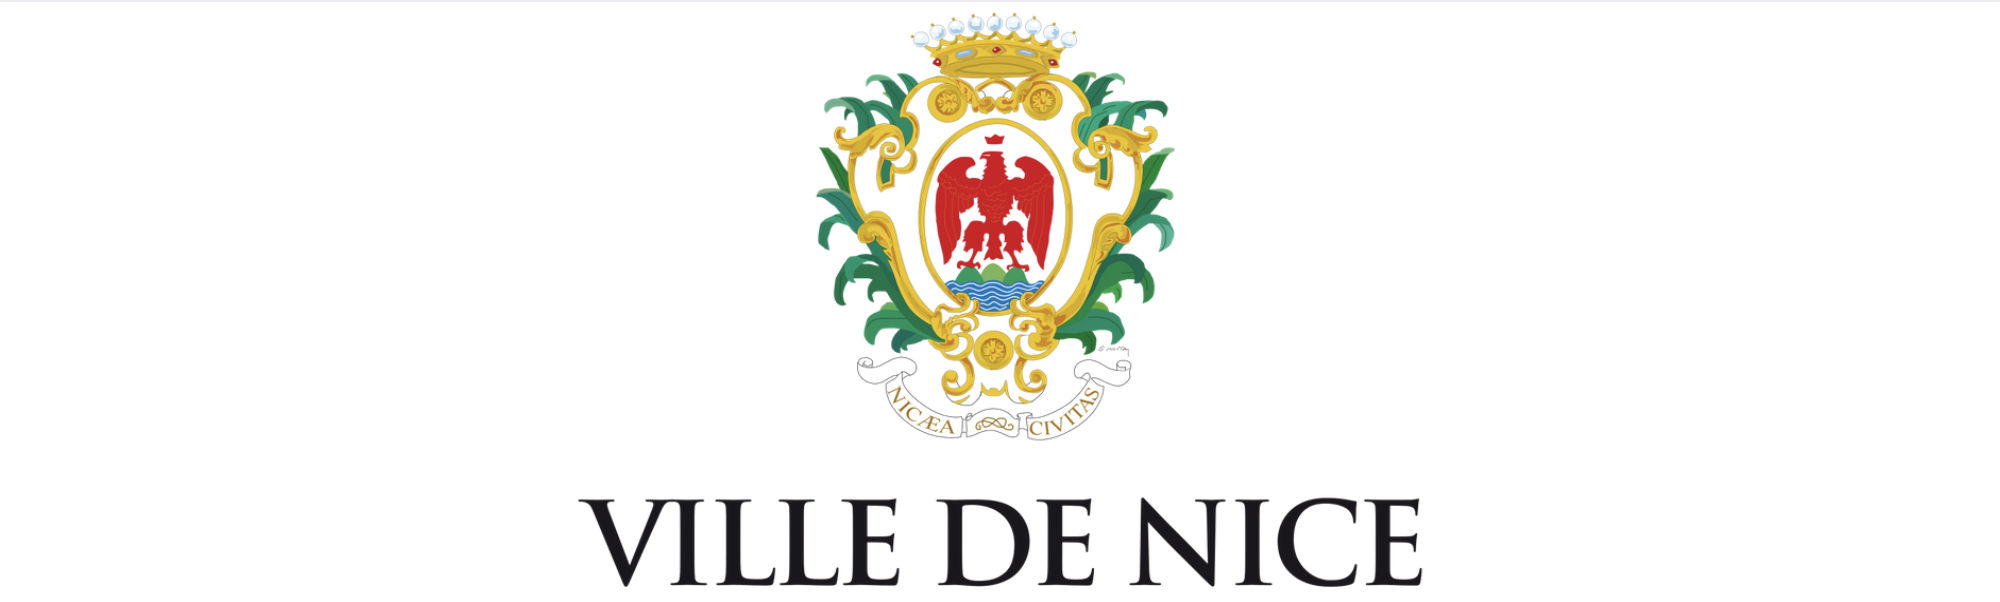 Ville de Nice